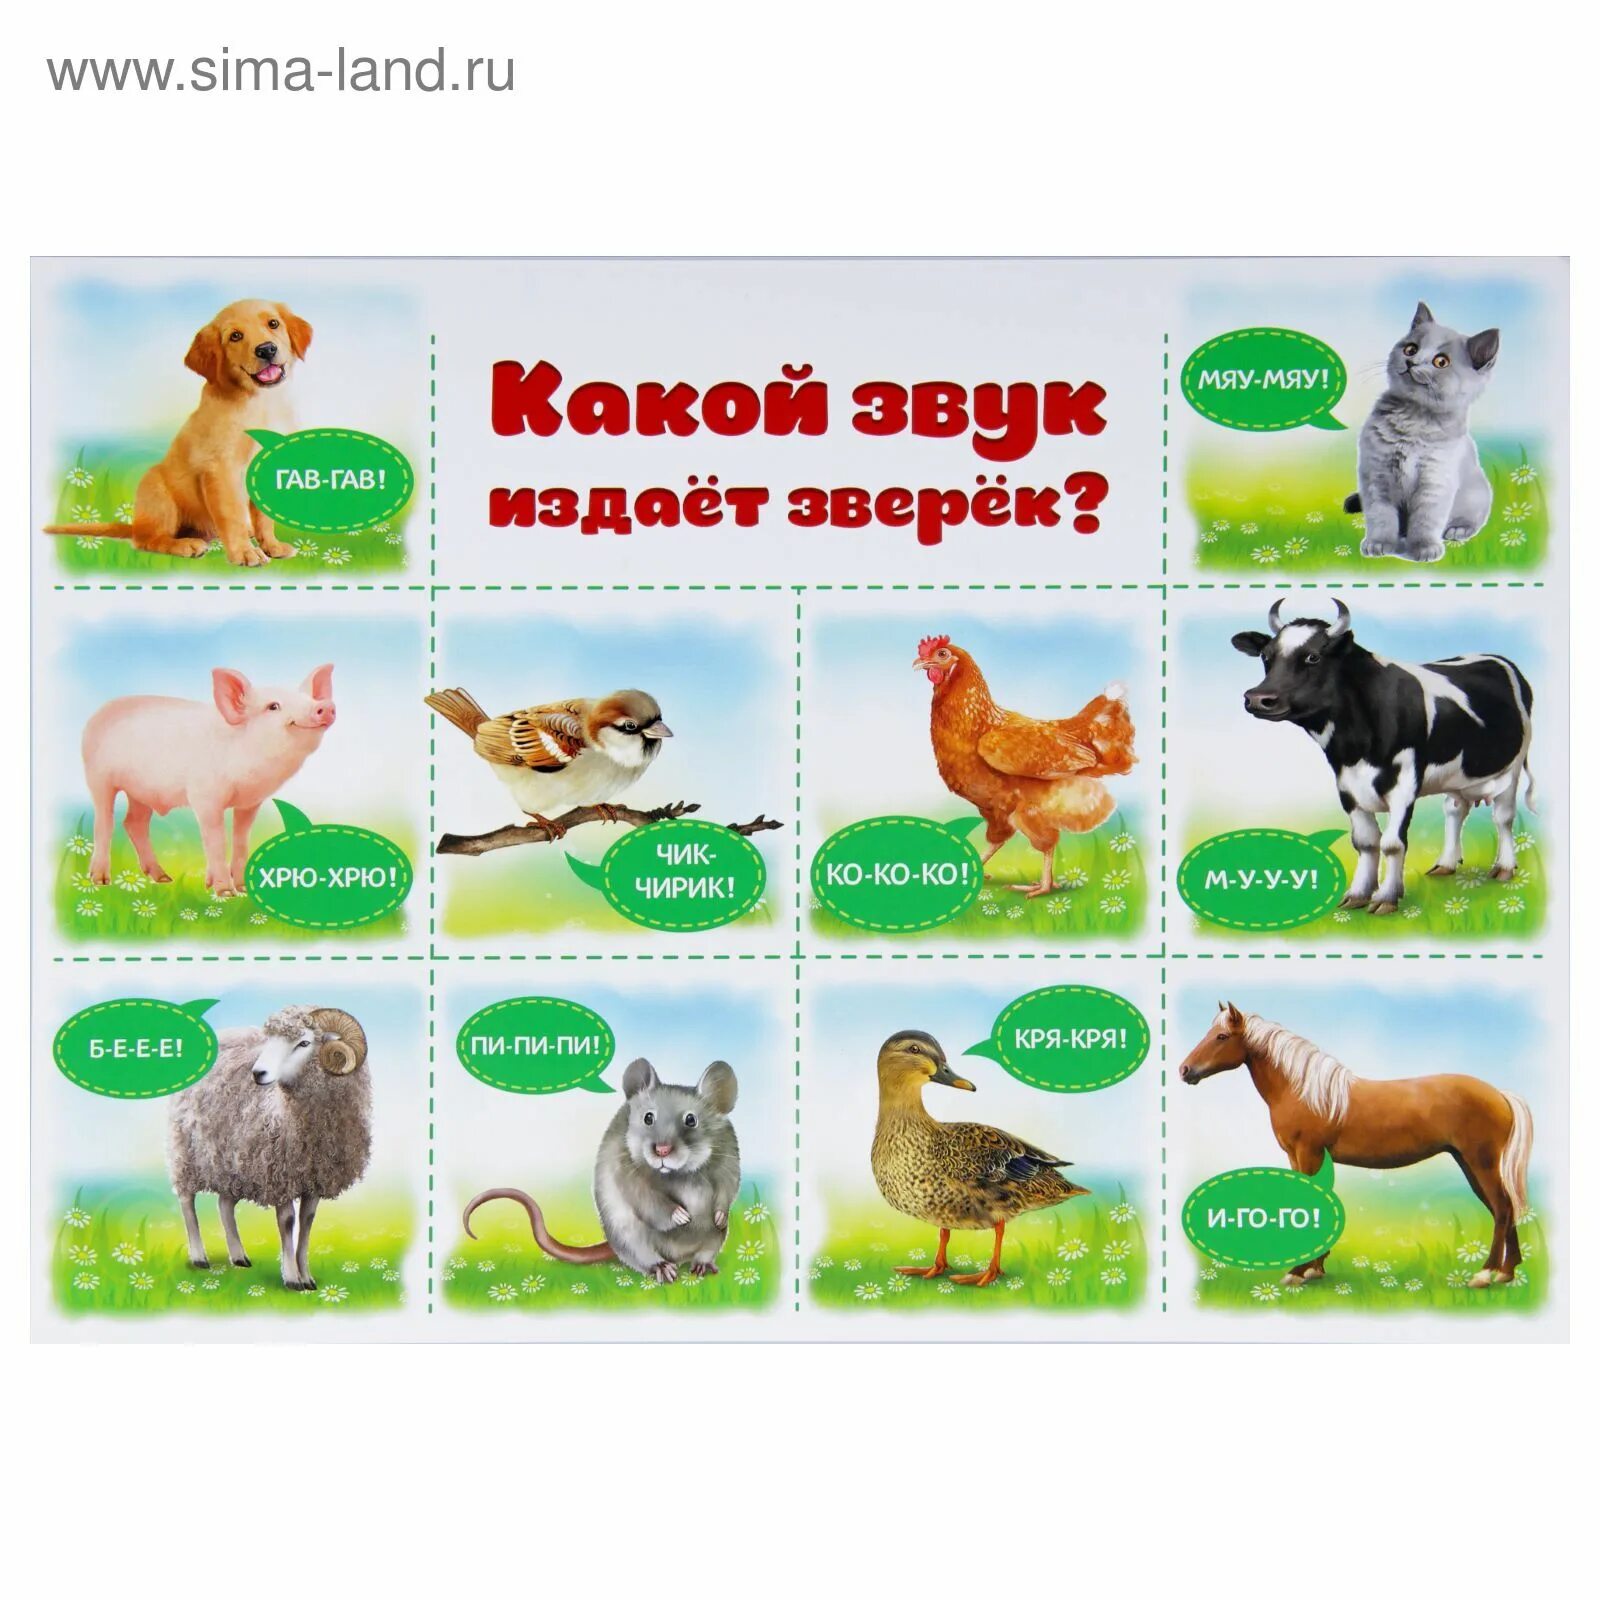 Какие буквы издают звук. Звуки животных для детей. Карточки для детей звуки животных для малышей. Обучающие плакаты домашние животные. Животные издают звуки.